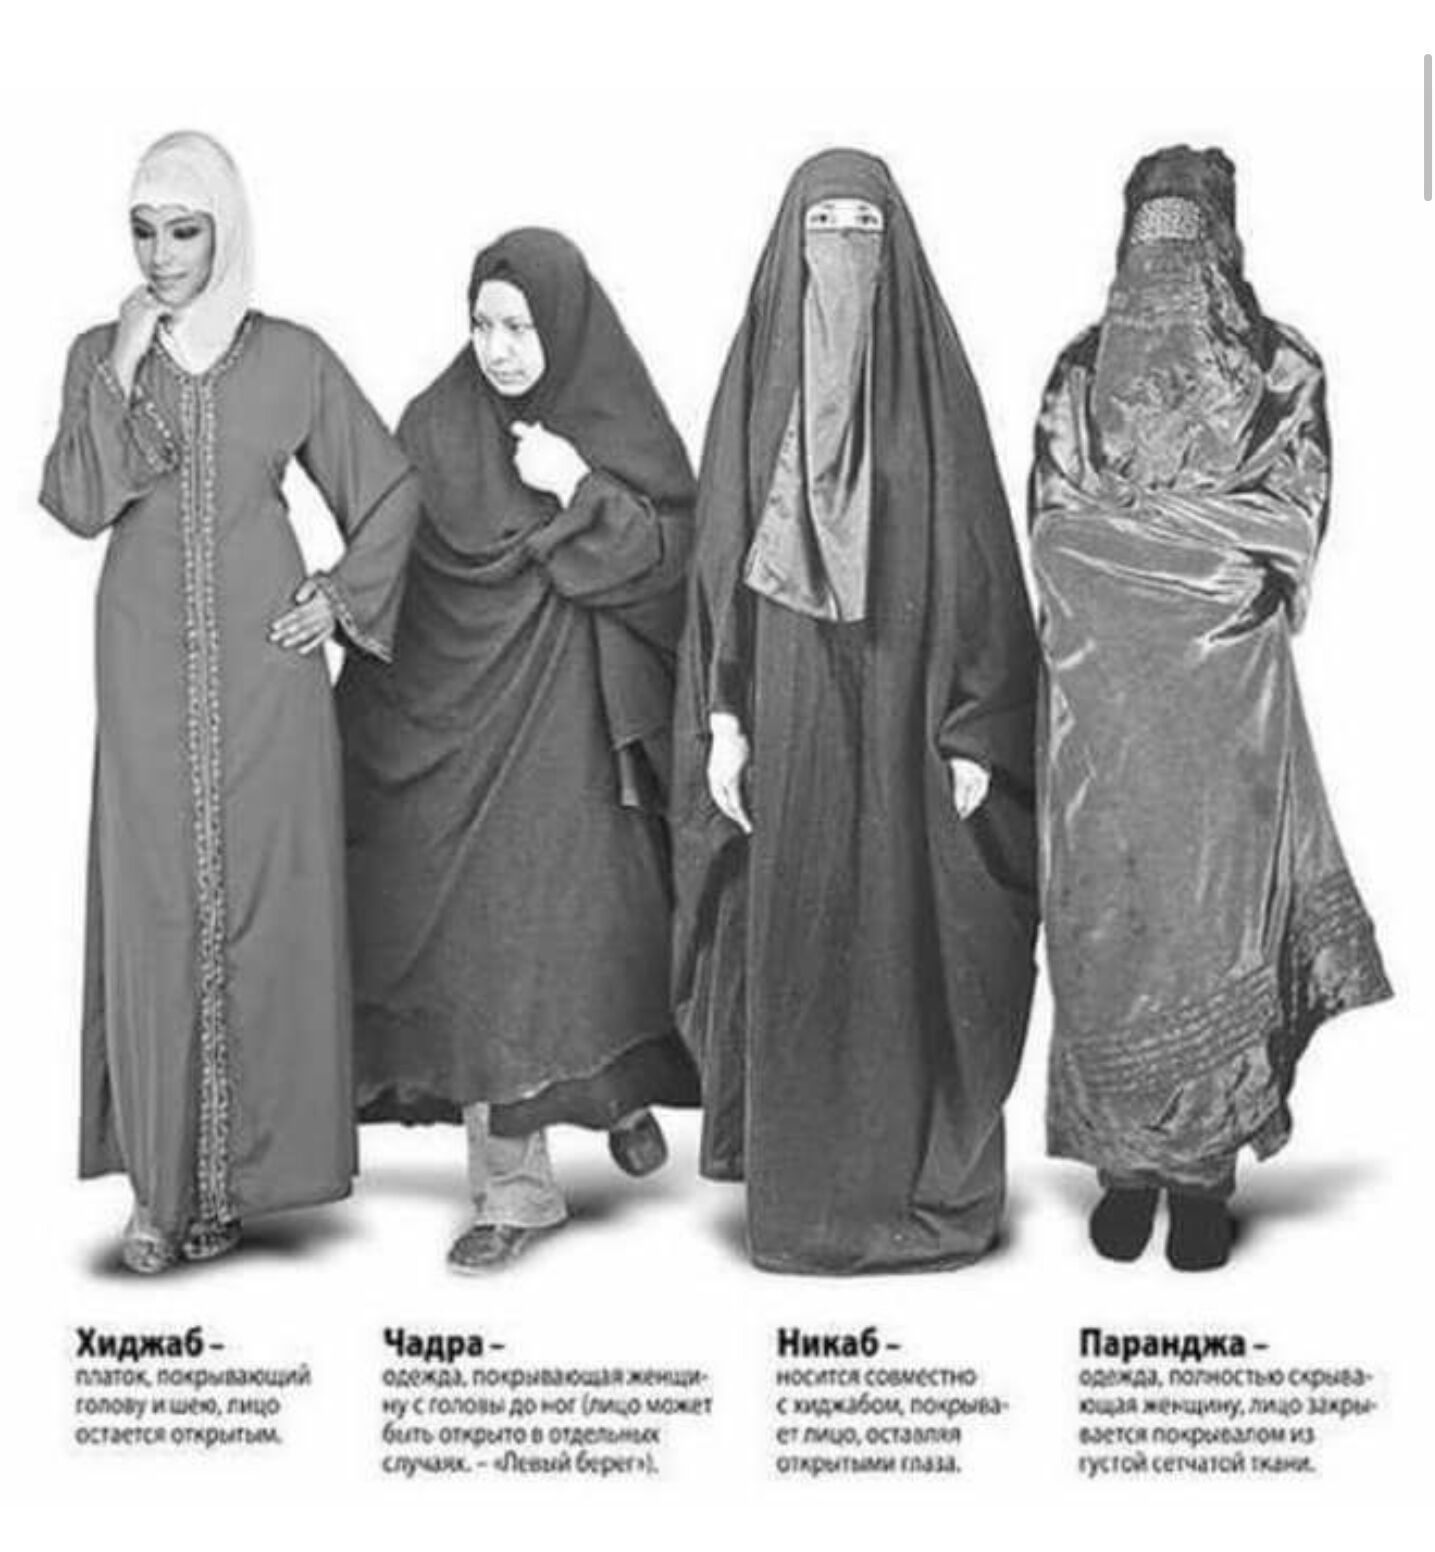 Паранда. Чадра паранджа хиджаб. Хиджаб никаб чадра паранджа бурка. Чаршаф турецкий. Никаб джильбаб.